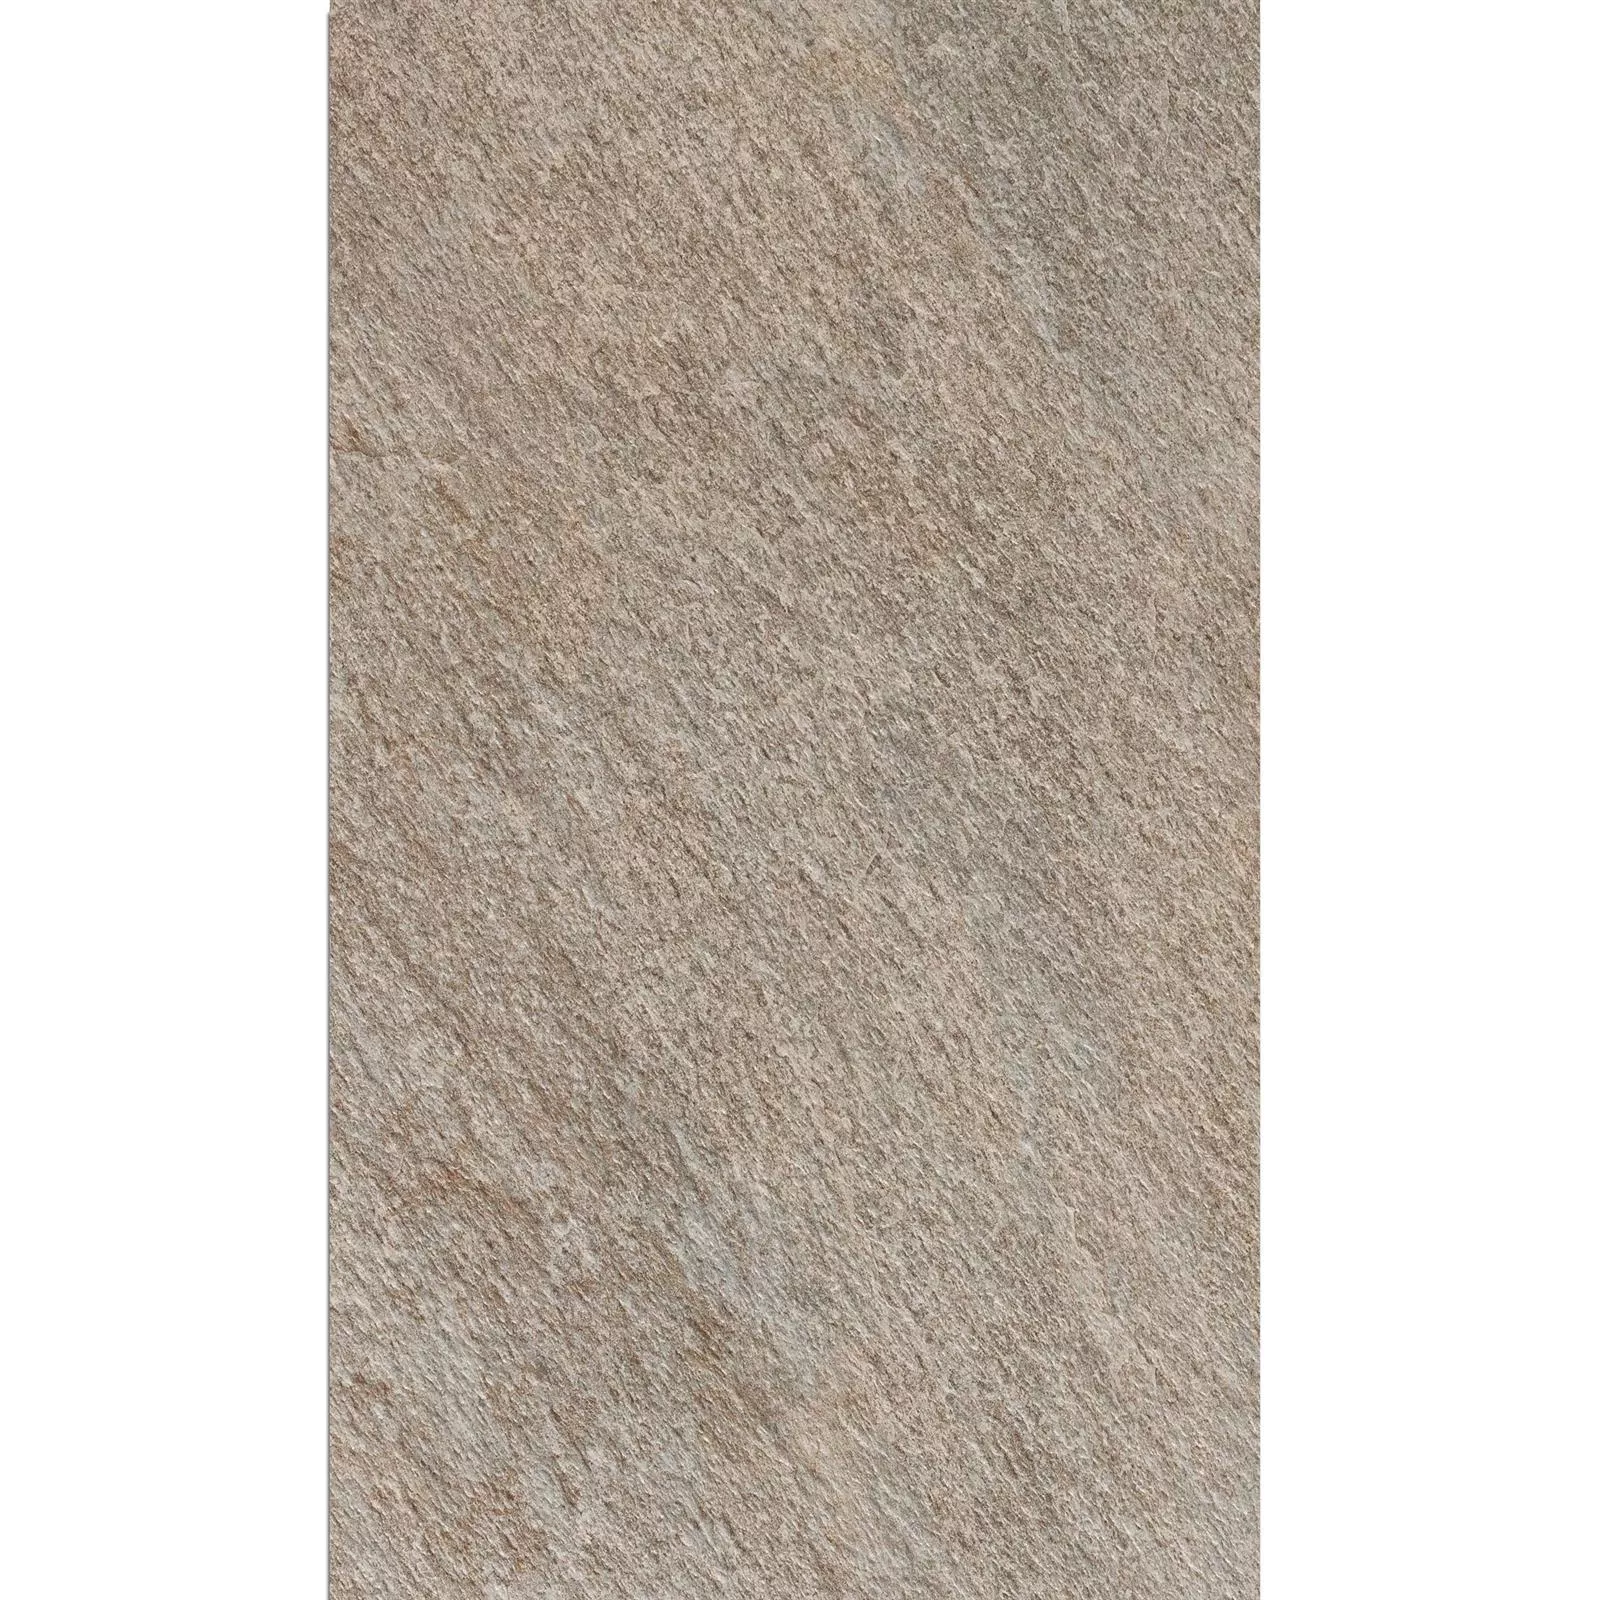 Ploče Za Terasu Stoneway Imitacija Prirodnog Kamena Siva 60x90cm